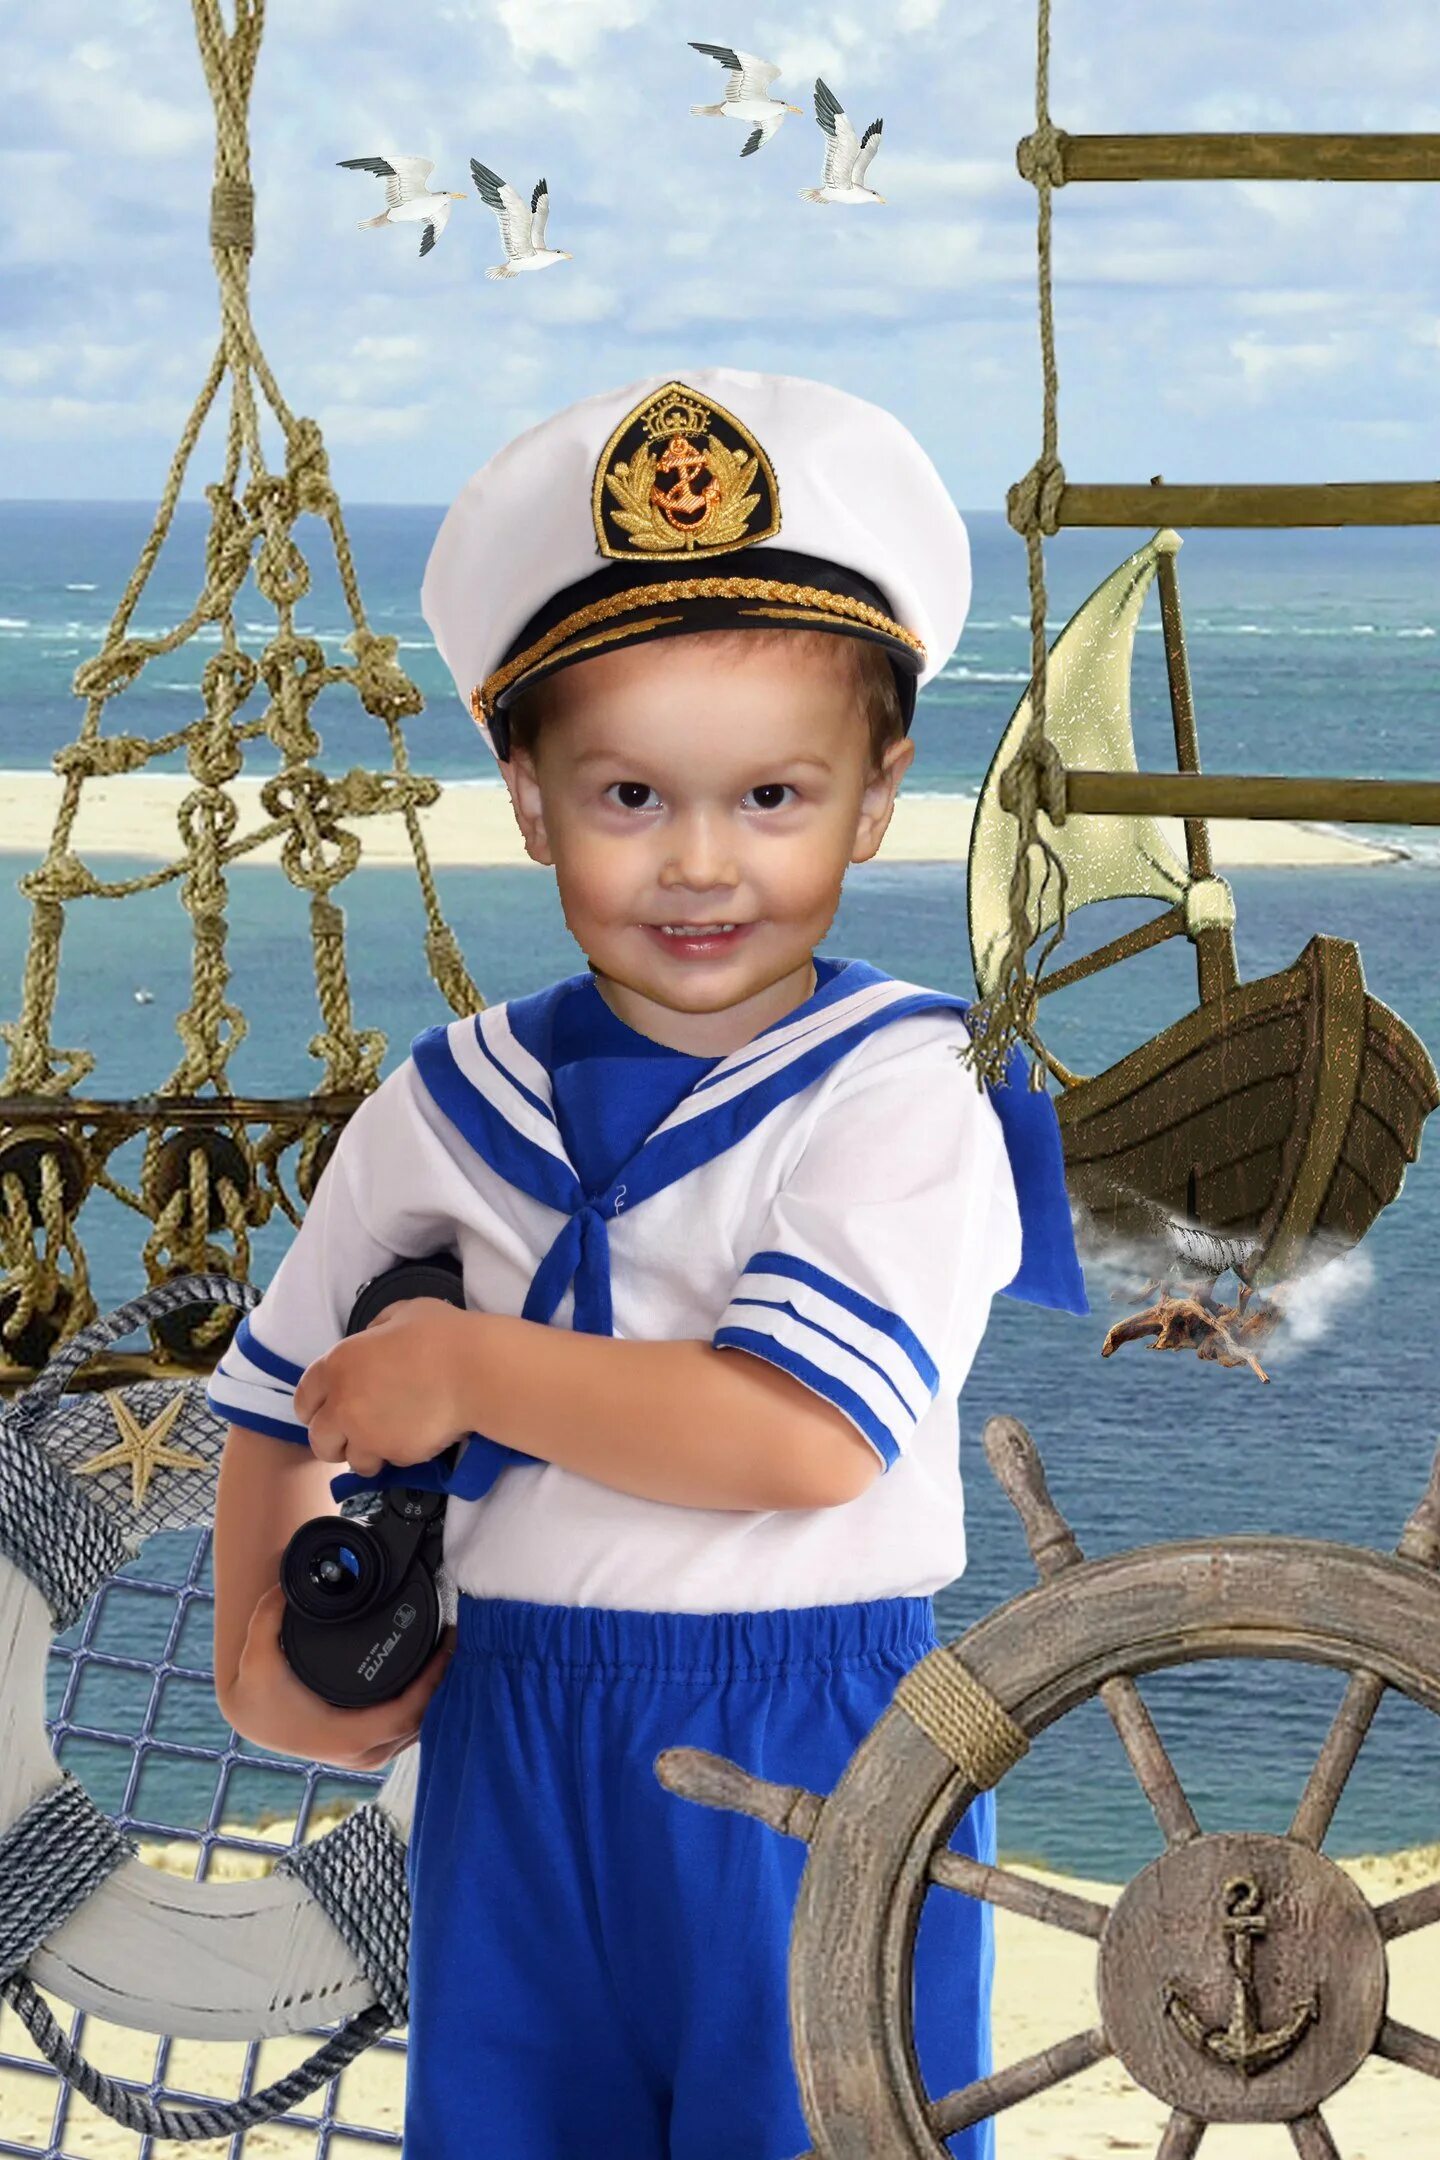 Капитан юнг. Моряк Юнга Капитан. Детский морской костюм. Детские костюмы на морскую тематику.